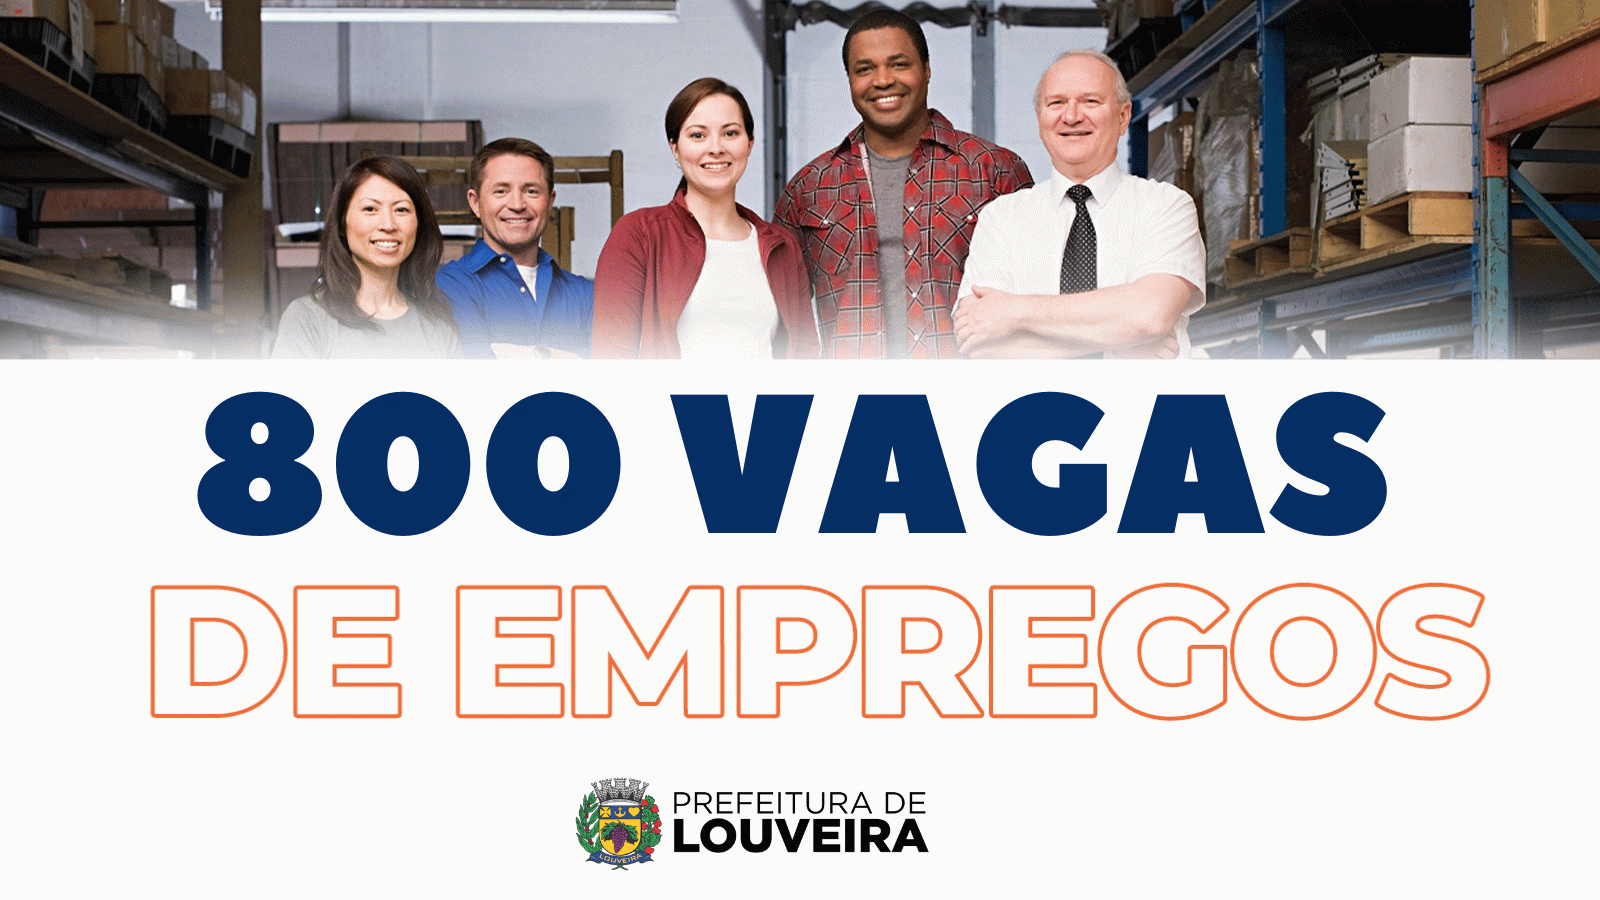 Com 800 vagas de emprego, Louveira projeta 110 vagas para o Hospital Santo Antônio e 150 vagas pela Shopee